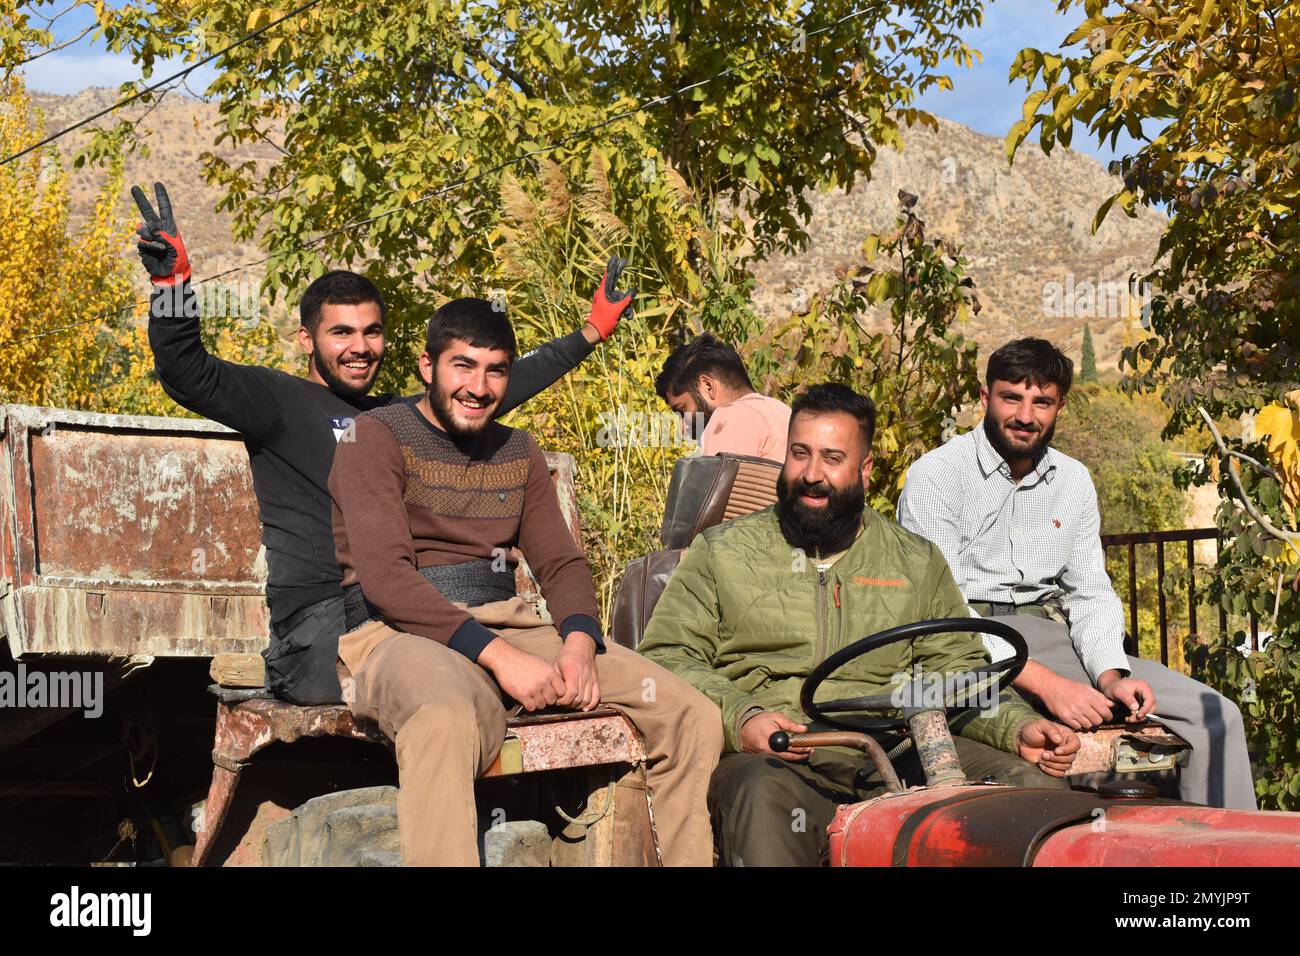 Fünf lächelnde Männer fahren einen alten, roten Traktor in einem kurdischen irakischen Dorf Stockfoto